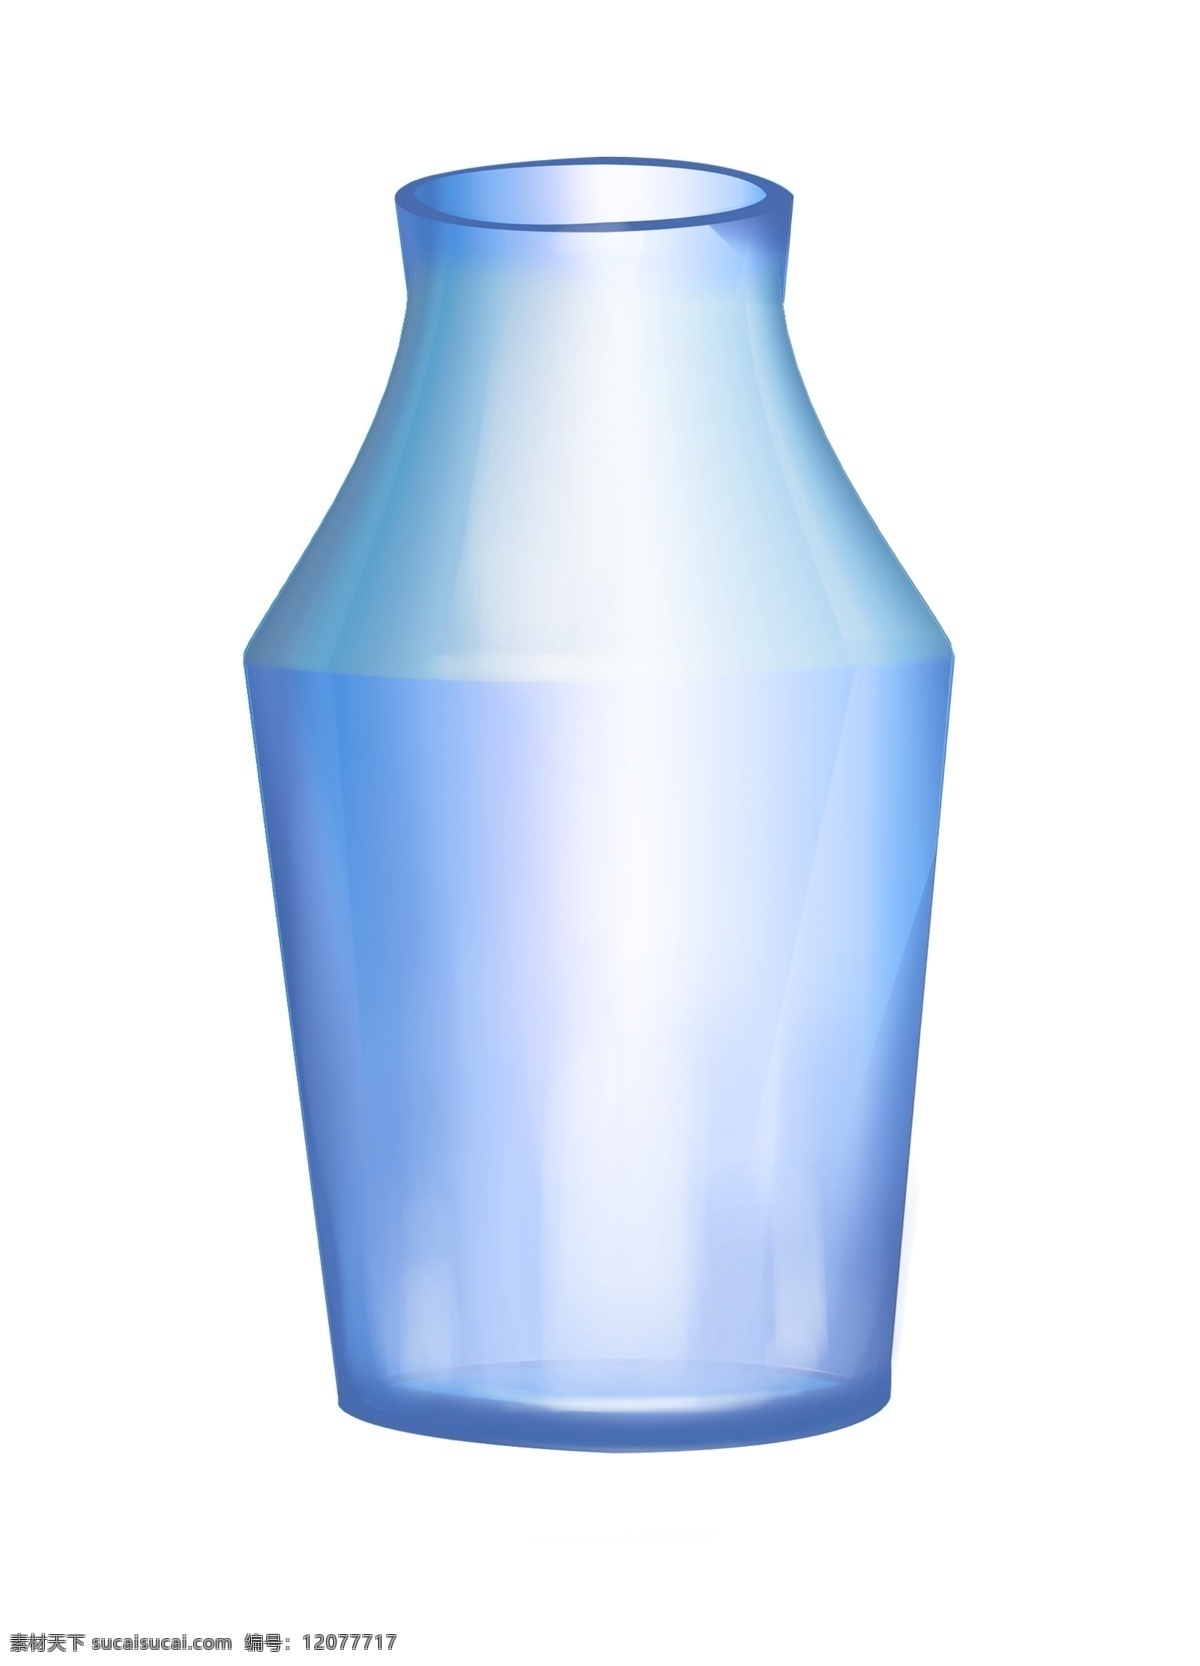 蓝色 玻璃 瓶子 插画 瓶子容器 蓝色瓶子 玻璃瓶子 蓝色玻璃瓶子 蓝色玻璃容器 容器插画